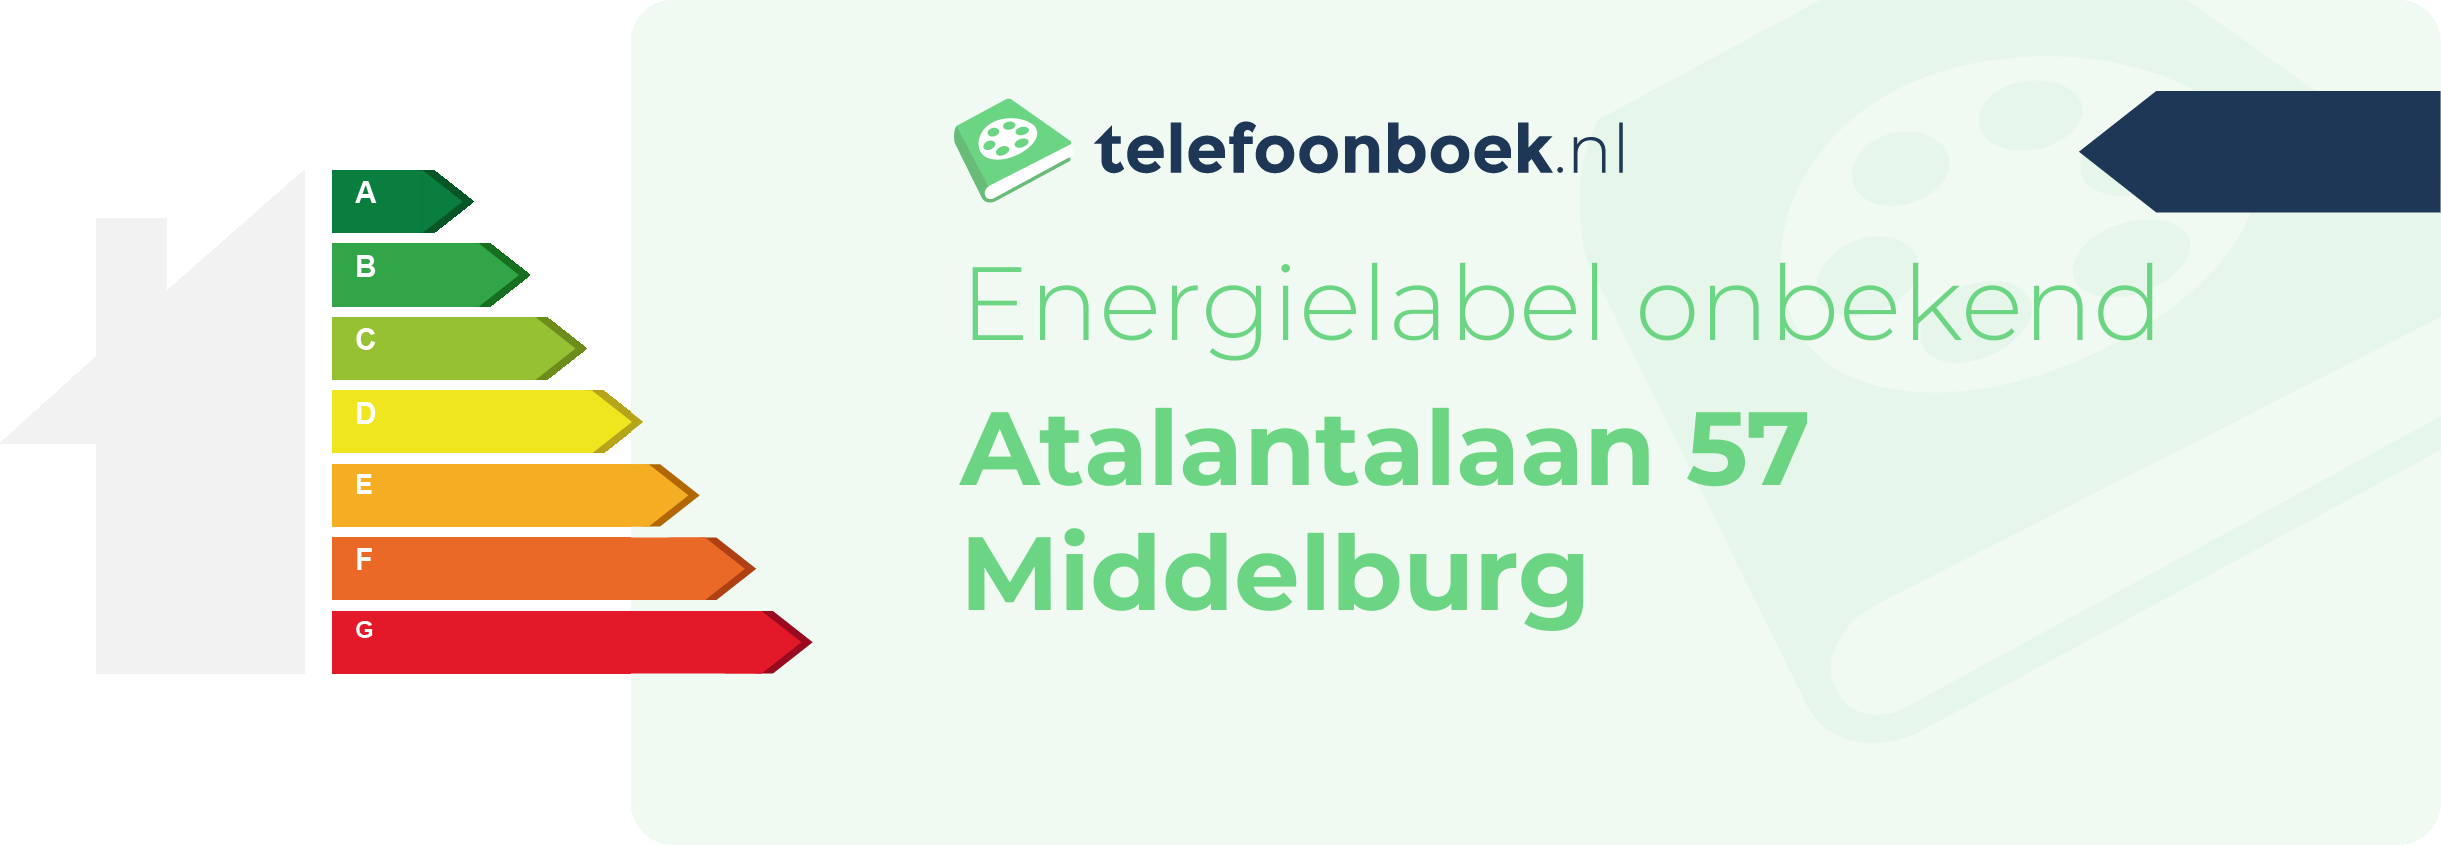 Energielabel Atalantalaan 57 Middelburg